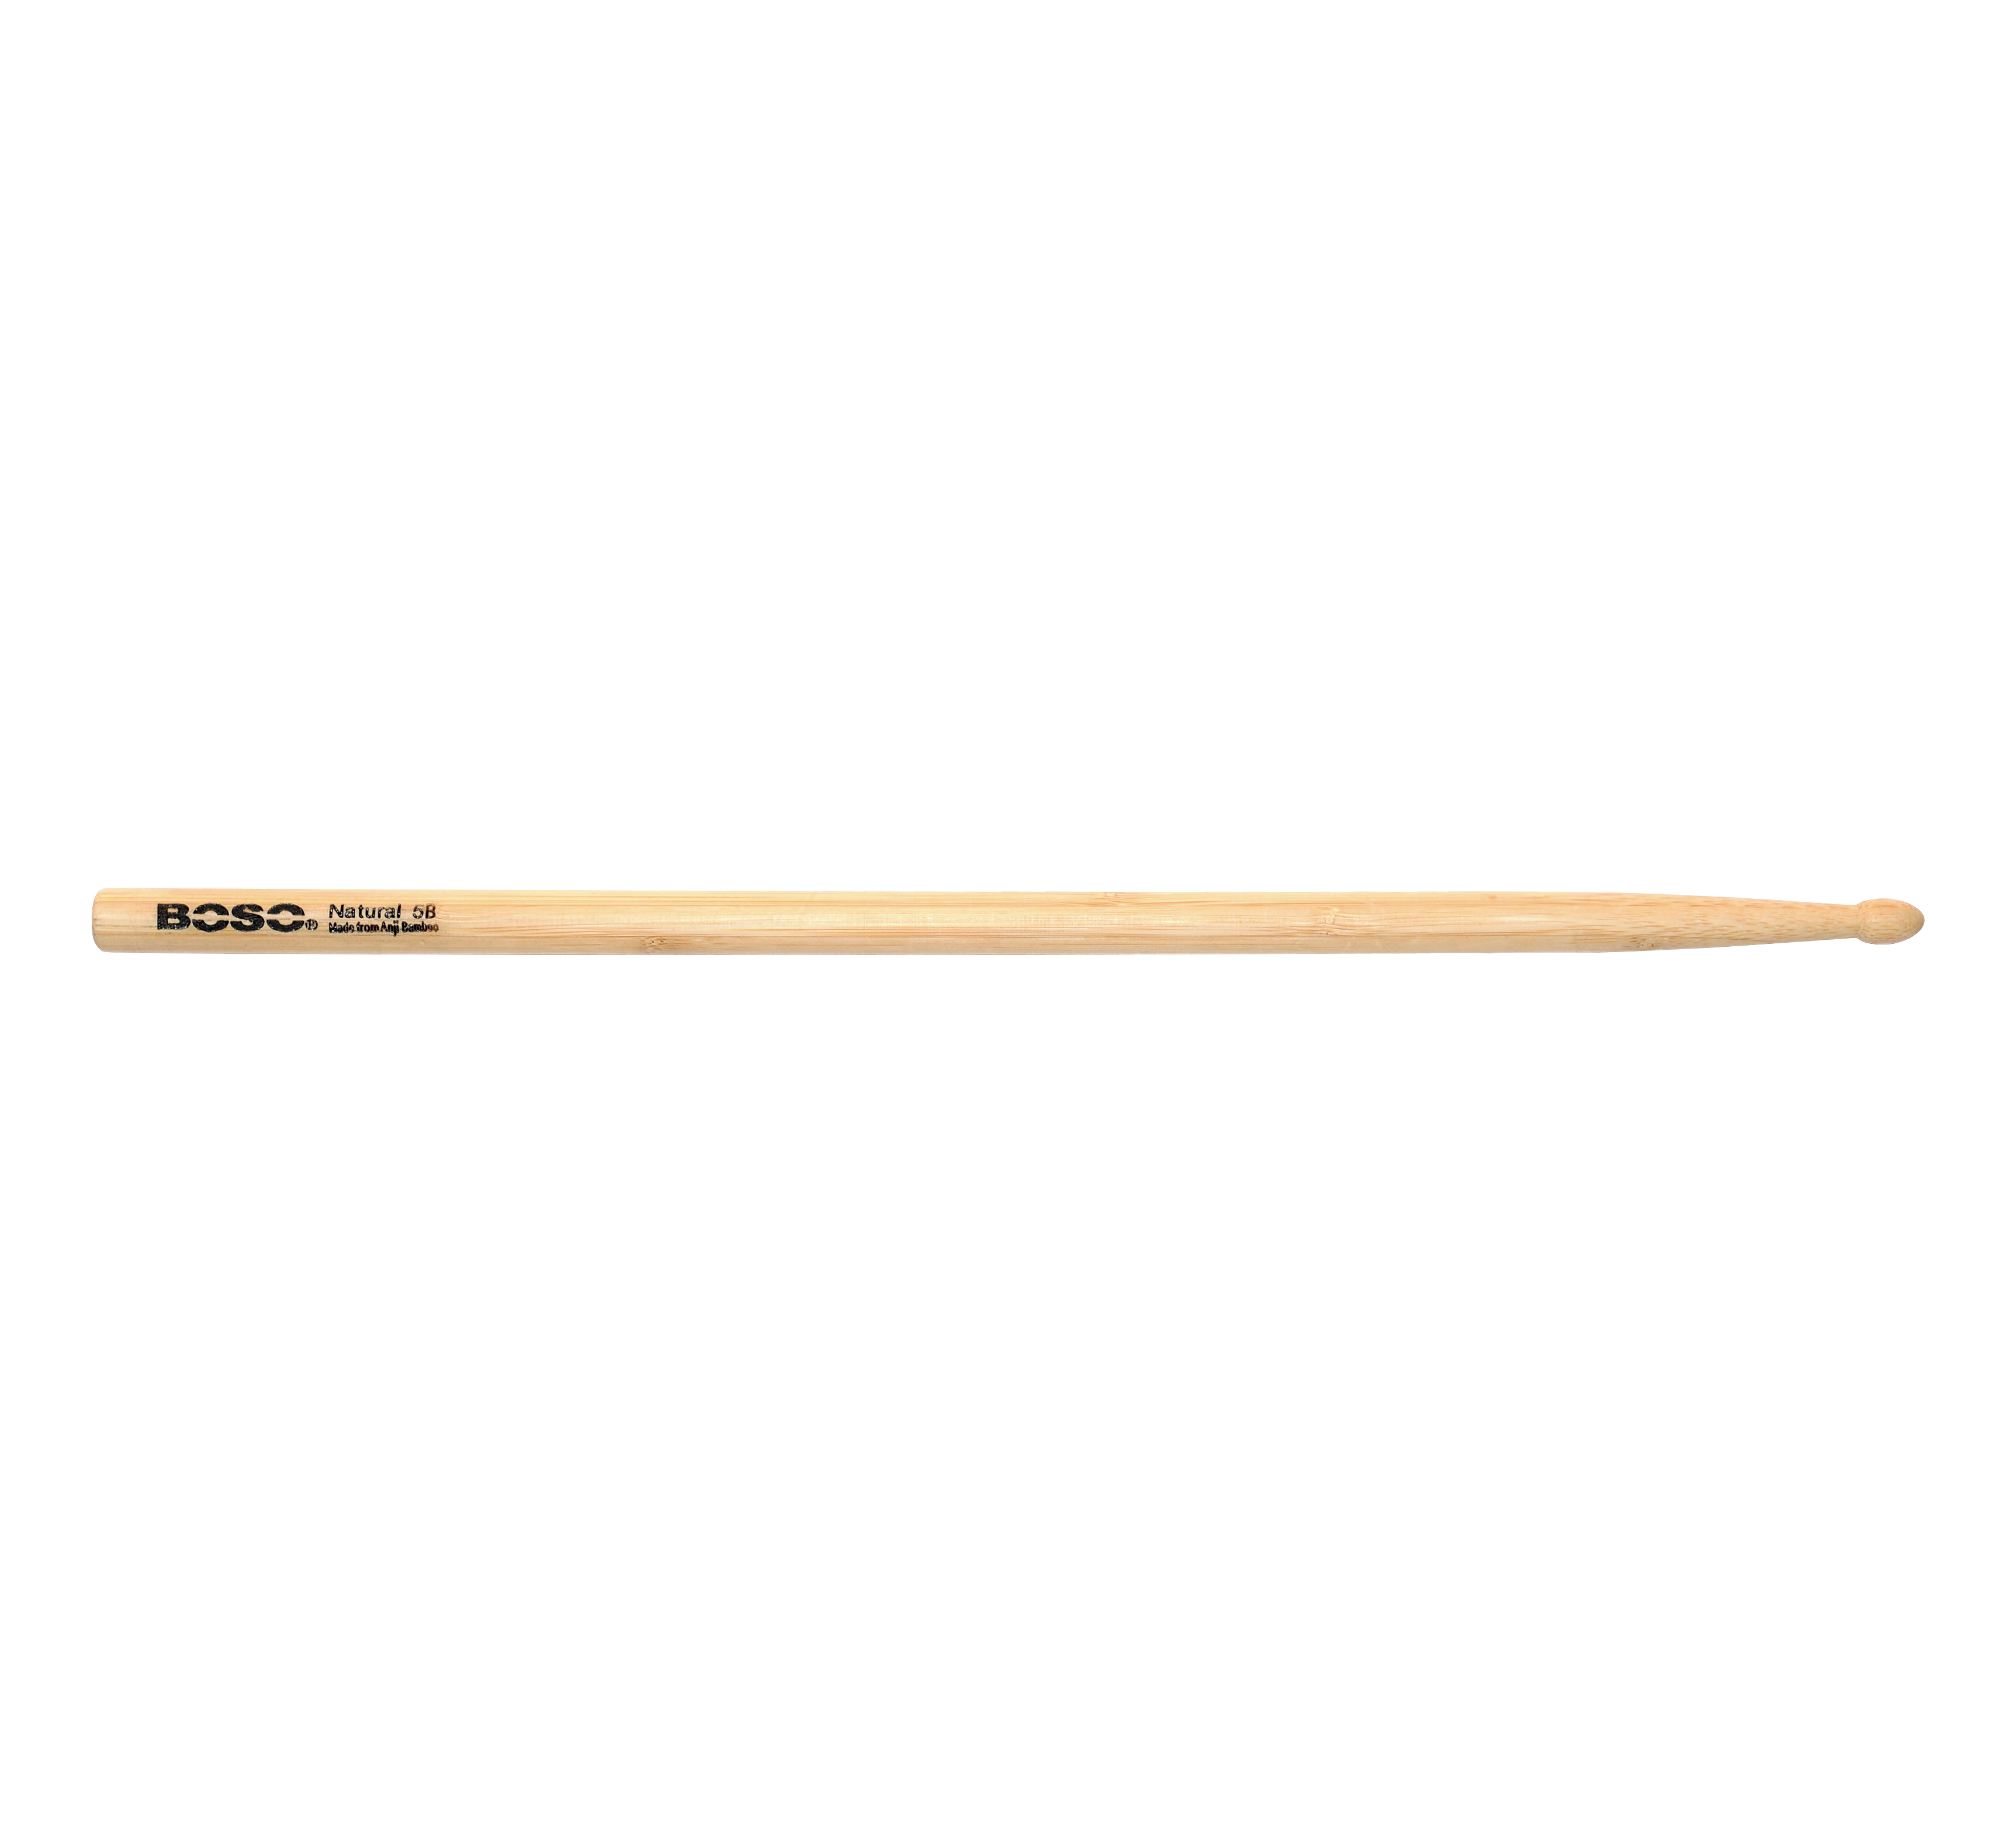 Boso Natural 5B Drumsticks